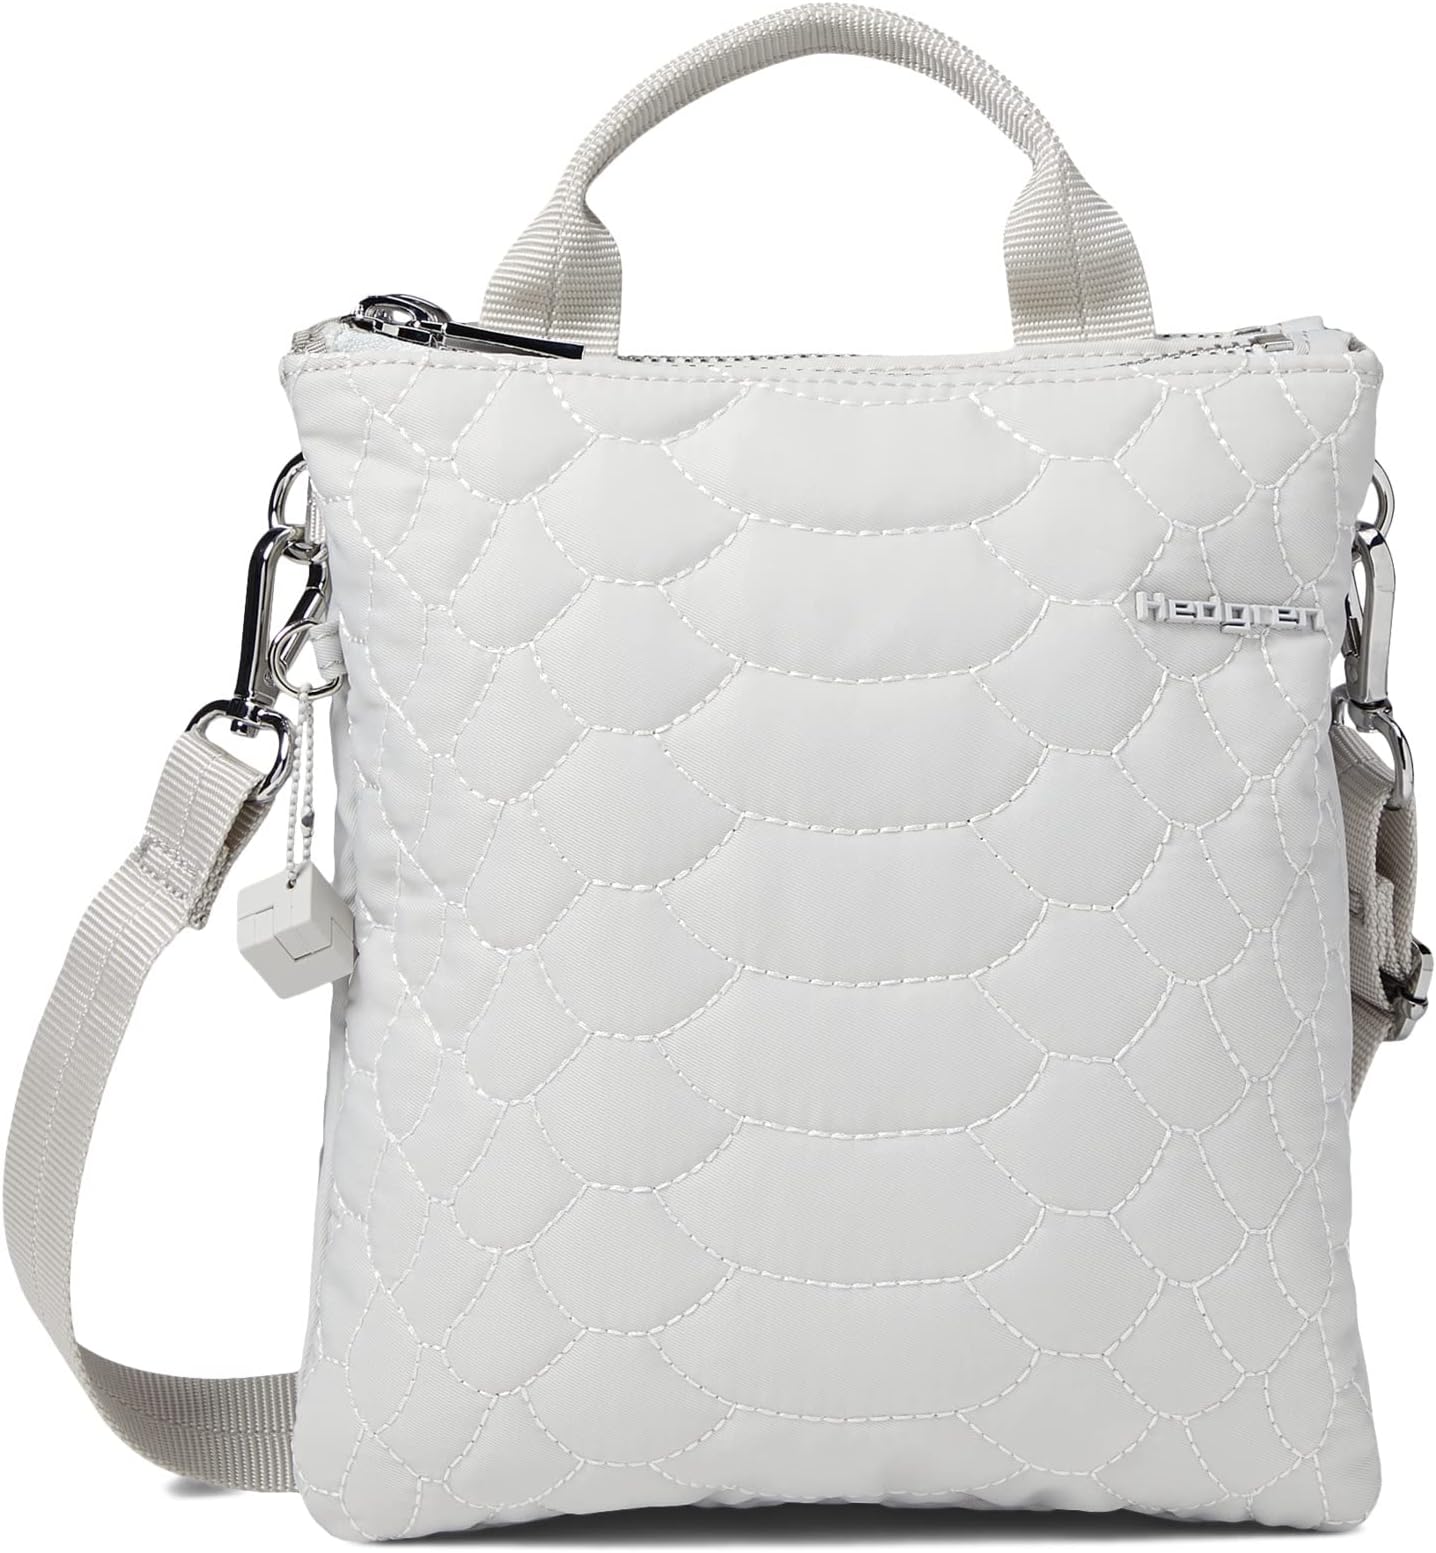 Nancy — сумка через плечо, изготовленная из экологически чистых материалов Hedgren, цвет Alabaster